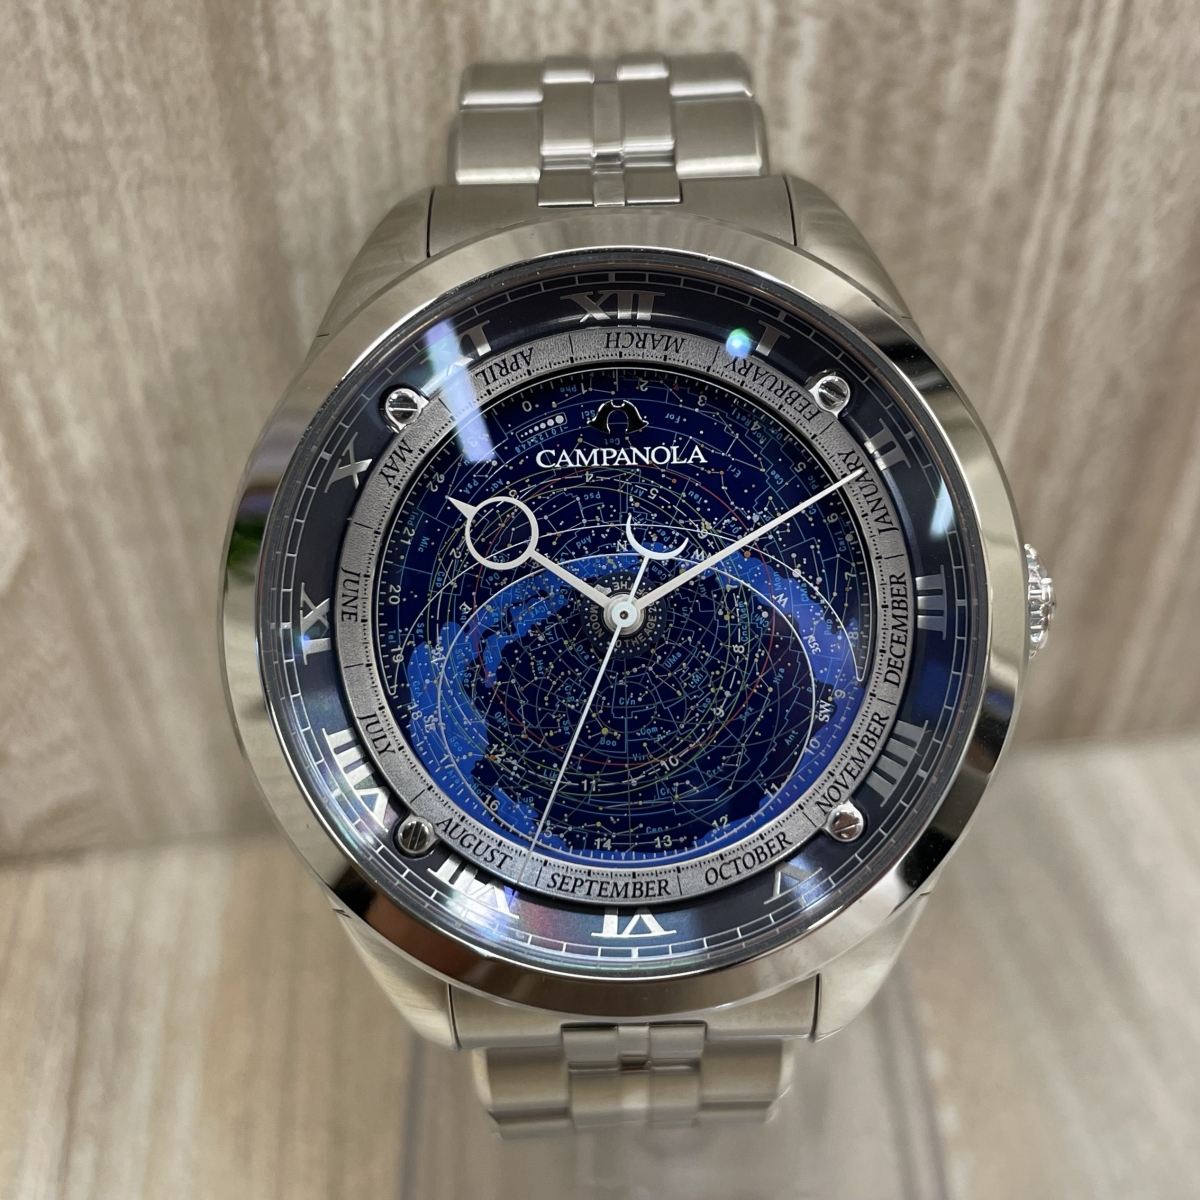 カンパノラのSS A04010-51L CAL.4398 コスモサインコレクション 自動巻き時計の買取実績です。